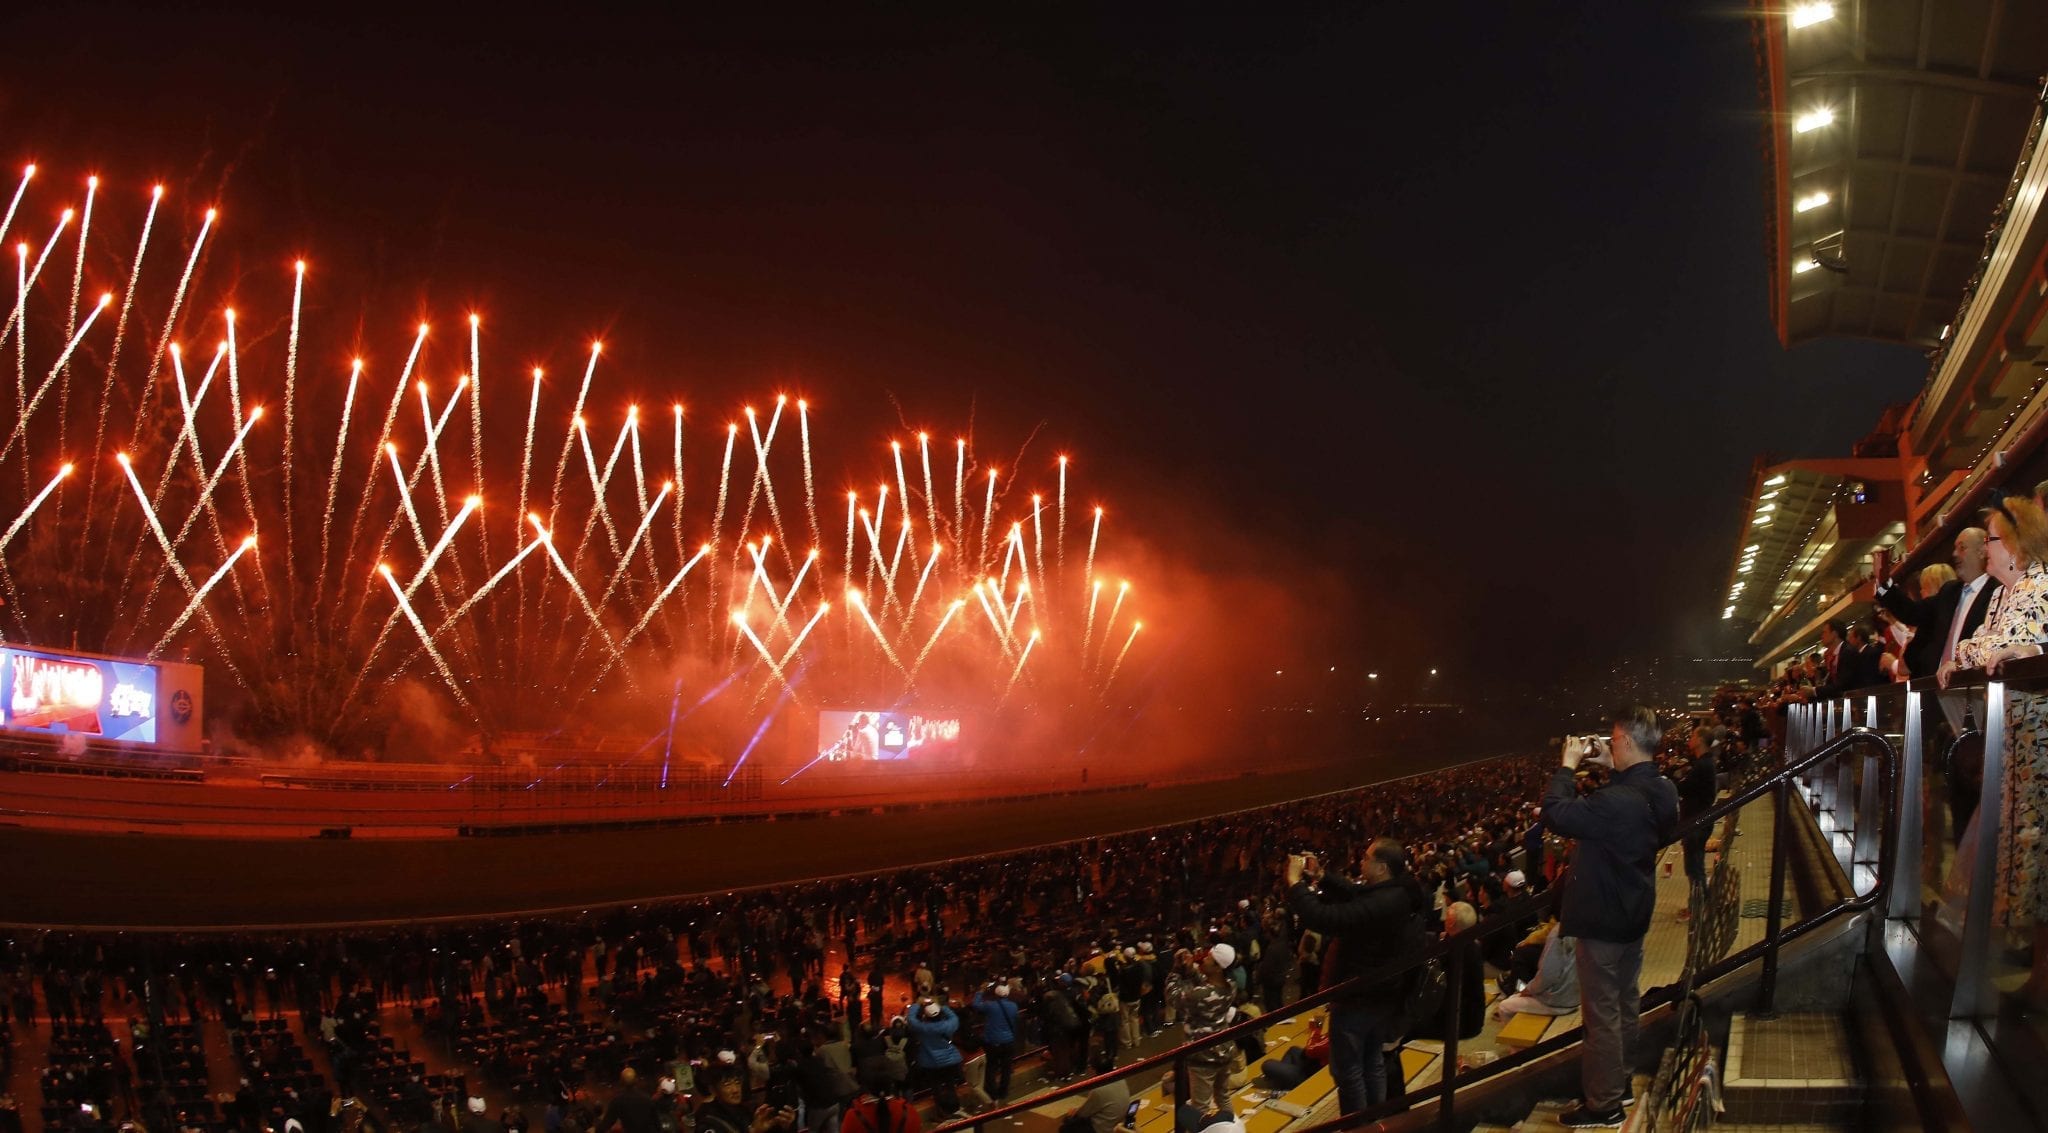 Hong Kong International Races fireworks